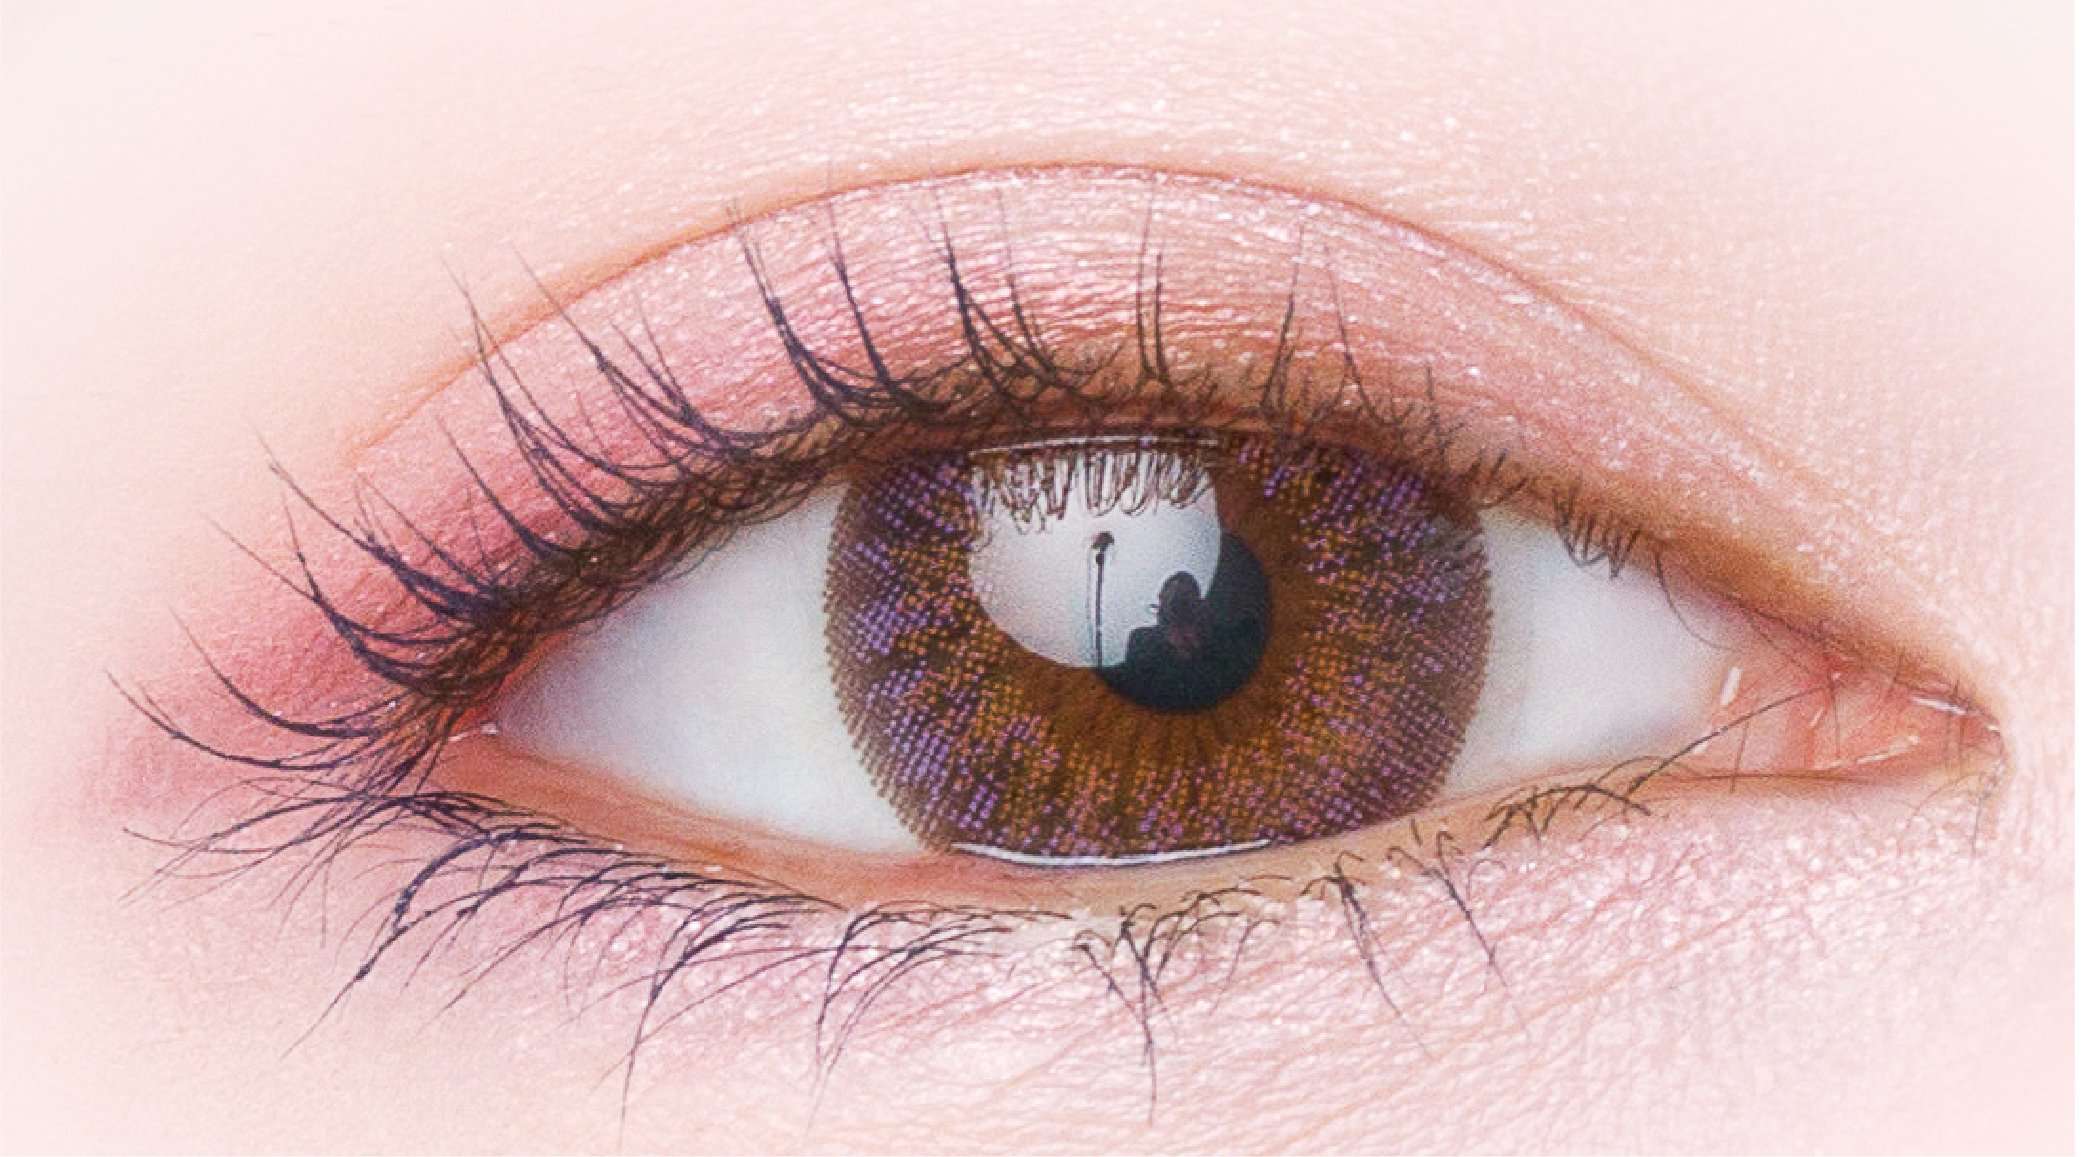 カラーコンタクトレンズ、PienAge ミミアメジスト | 1dayを装用した状態の目のアップ画像